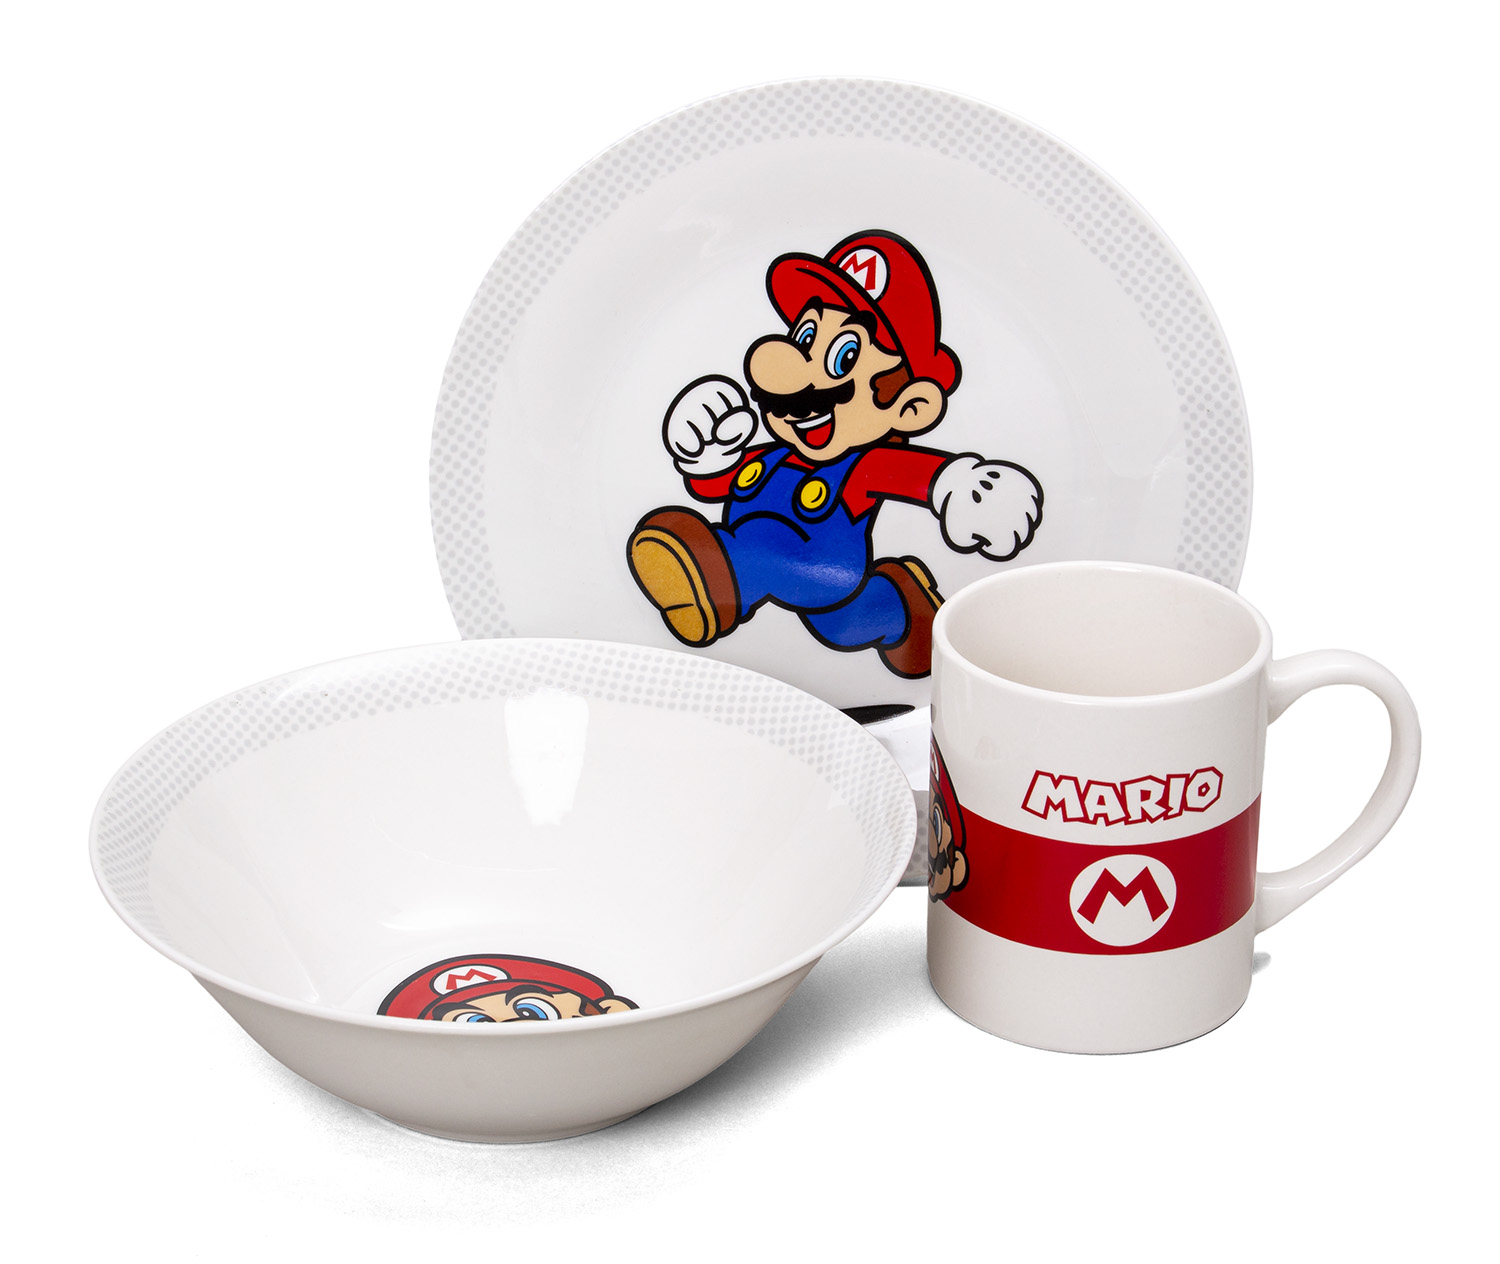 Frühstücksset (Schale, Teller, Tasse) - Super Mario